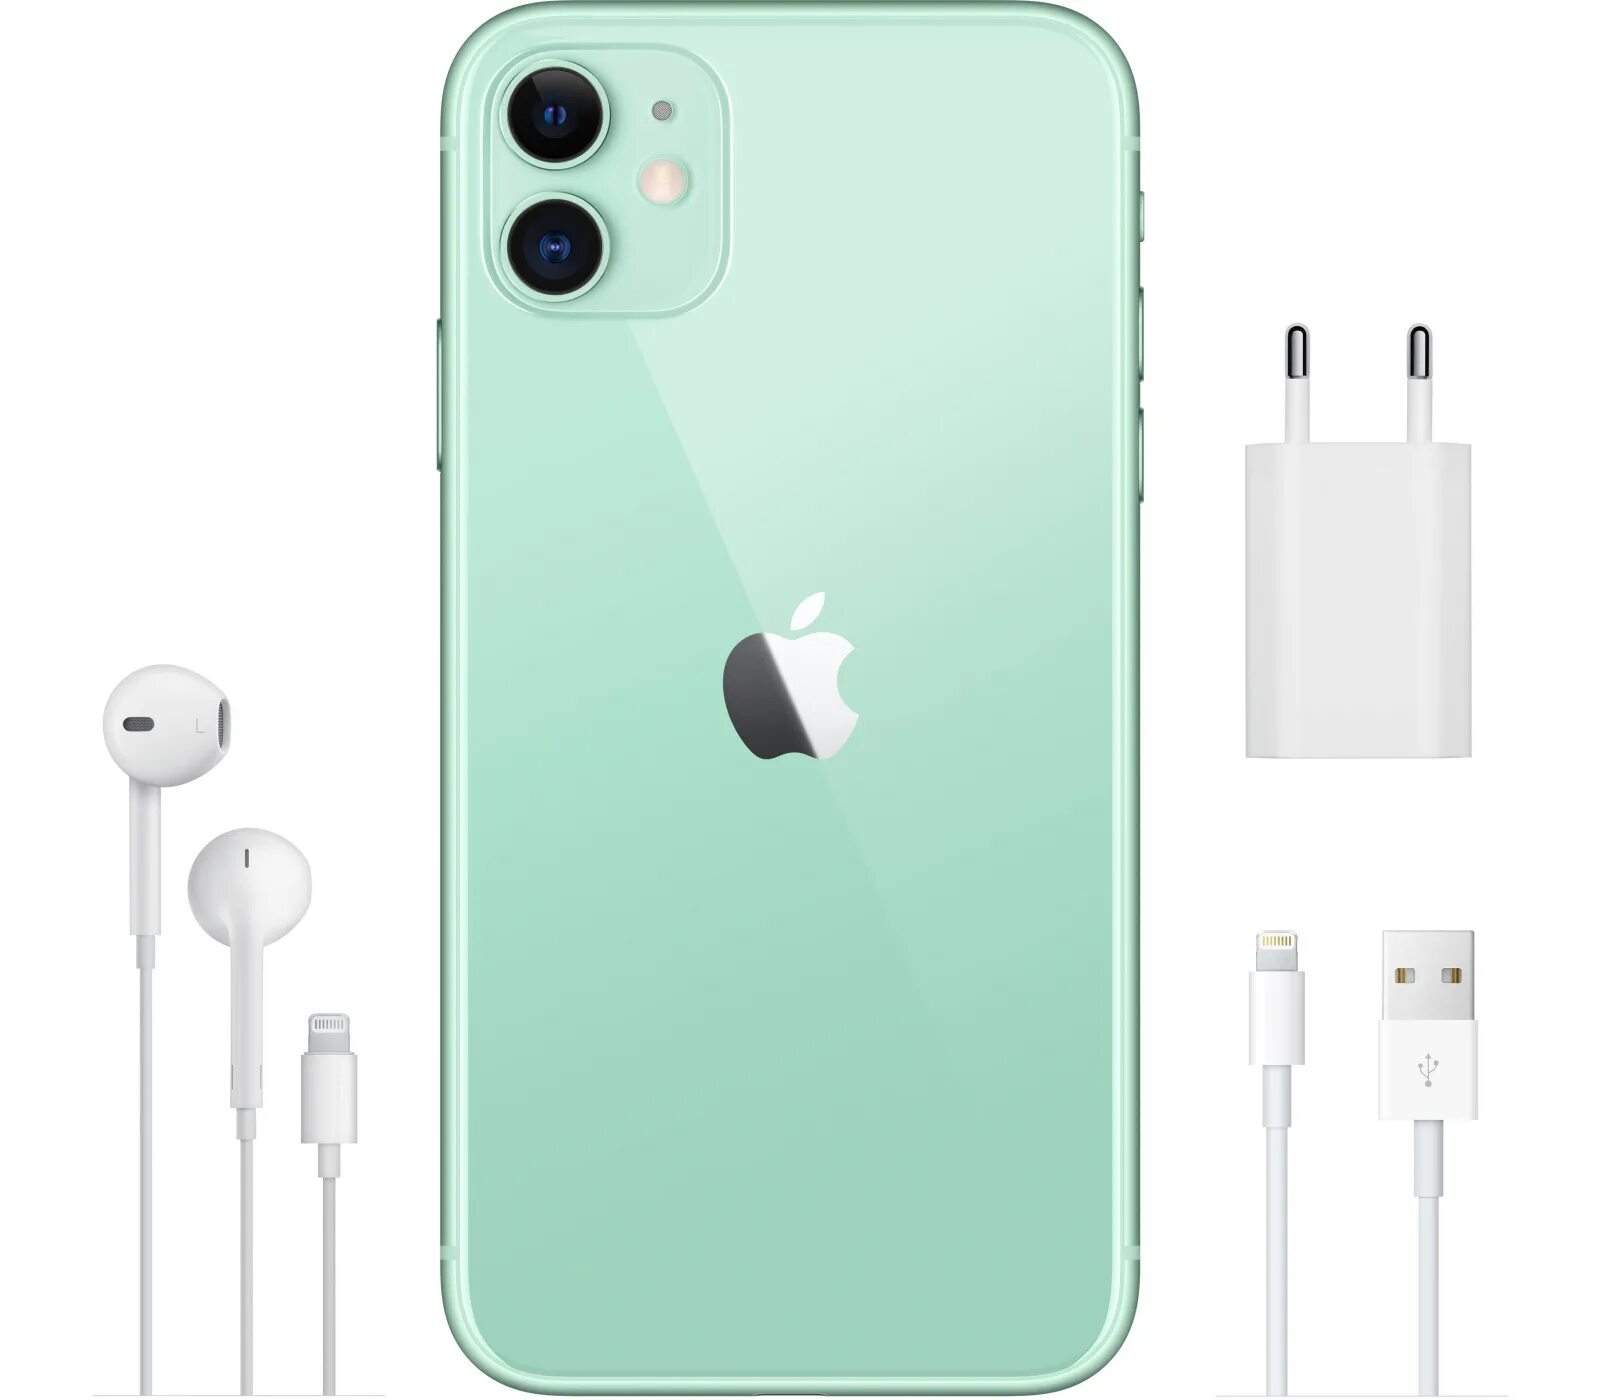 Айфон 11 128 спб купить. Apple iphone 11 64гб зелёный. Apple iphone 11 64gb. Apple iphone 11 64gb зеленый. Apple iphone 11 128gb Green.